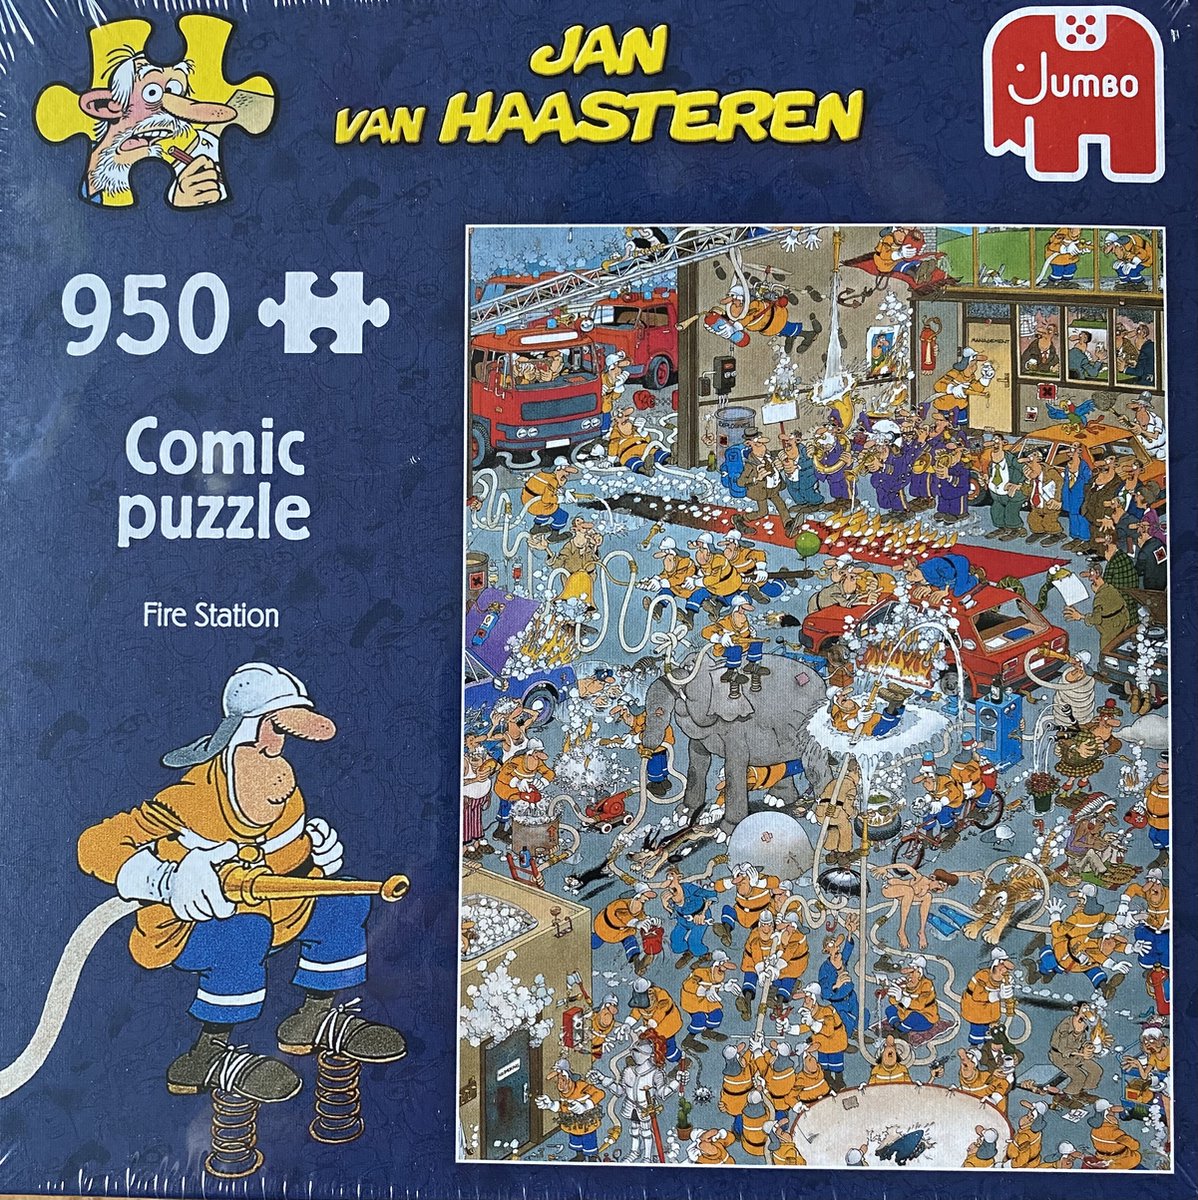 Jan van Haasteren jumbo Fire station 950 stukjes comic puzzle